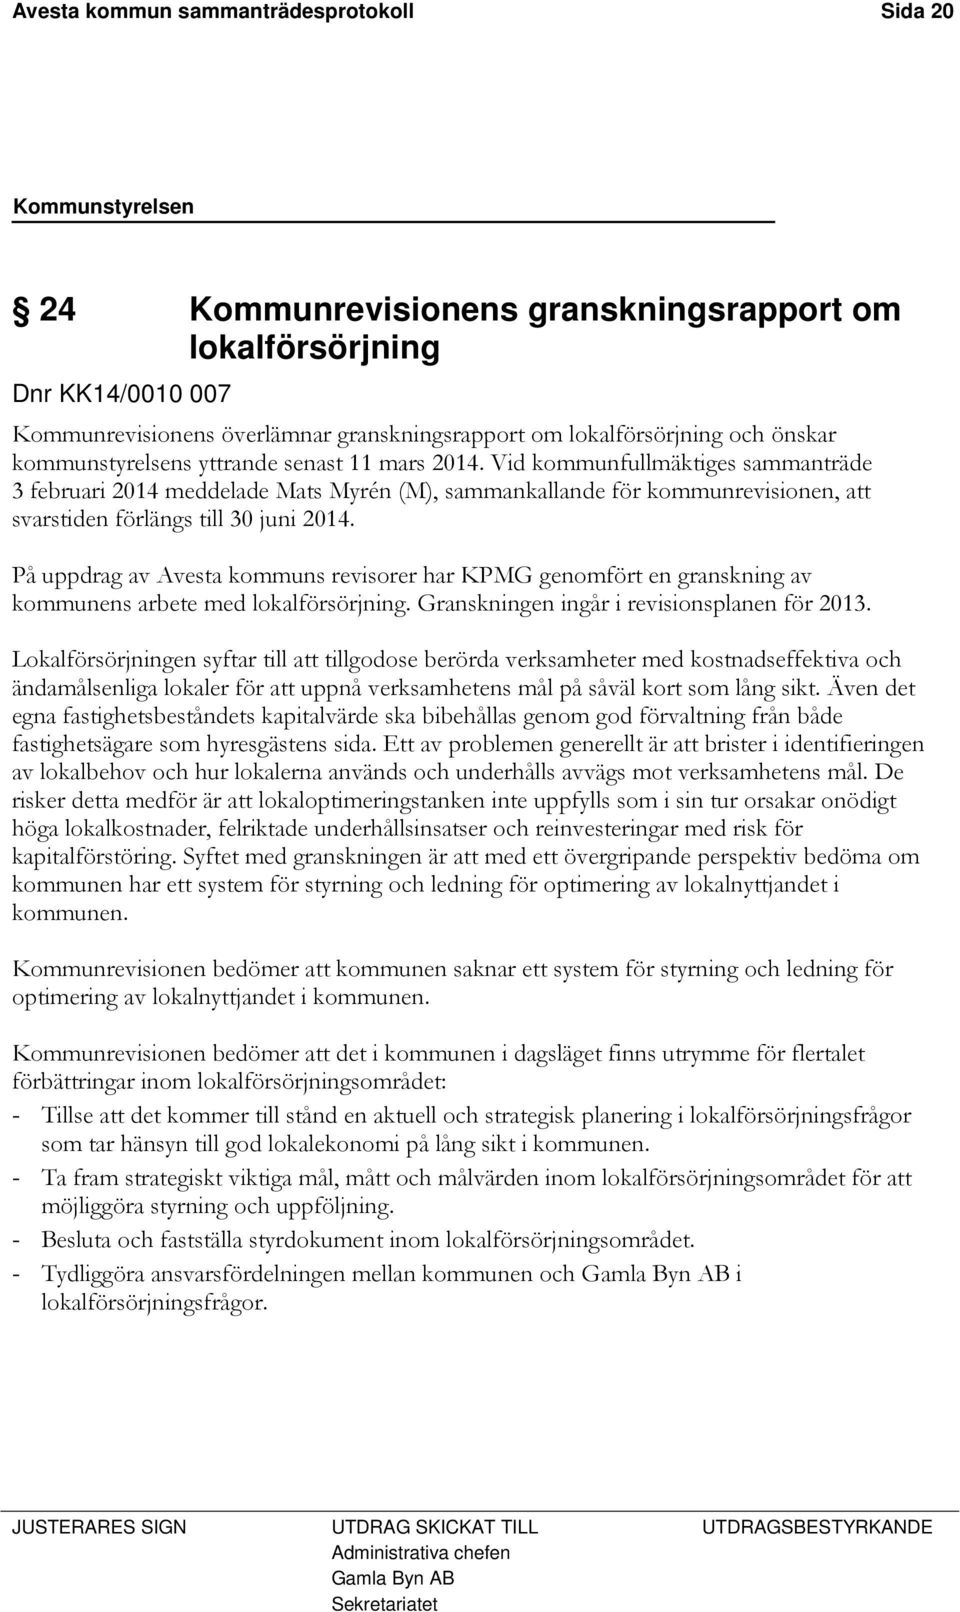 Vid kommunfullmäktiges sammanträde 3 februari 2014 meddelade Mats Myrén (M), sammankallande för kommunrevisionen, att svarstiden förlängs till 30 juni 2014.